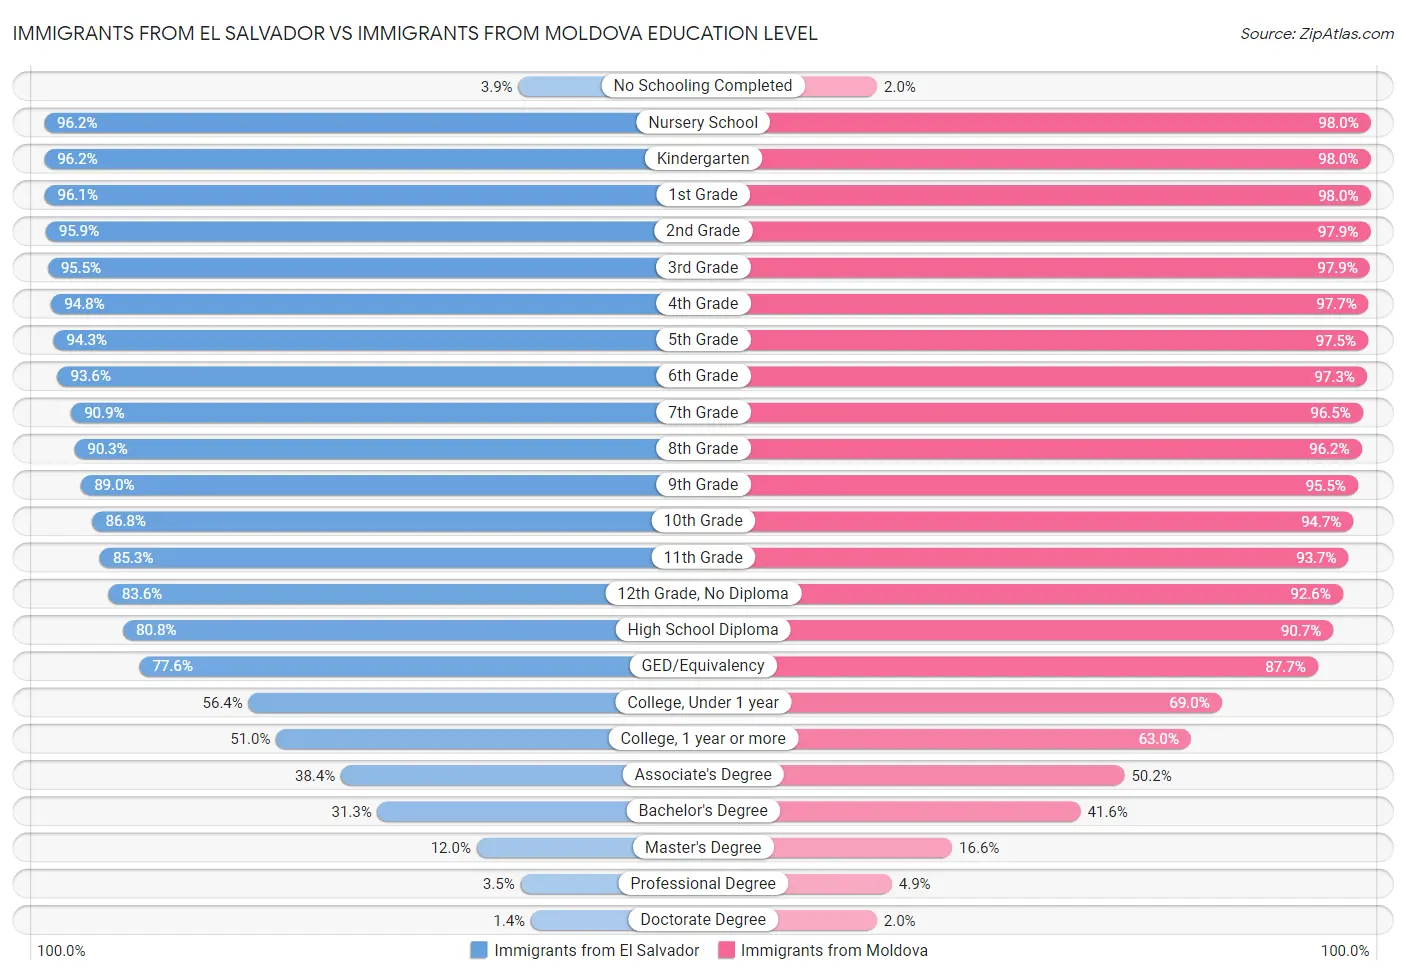 Immigrants from El Salvador vs Immigrants from Moldova Education Level